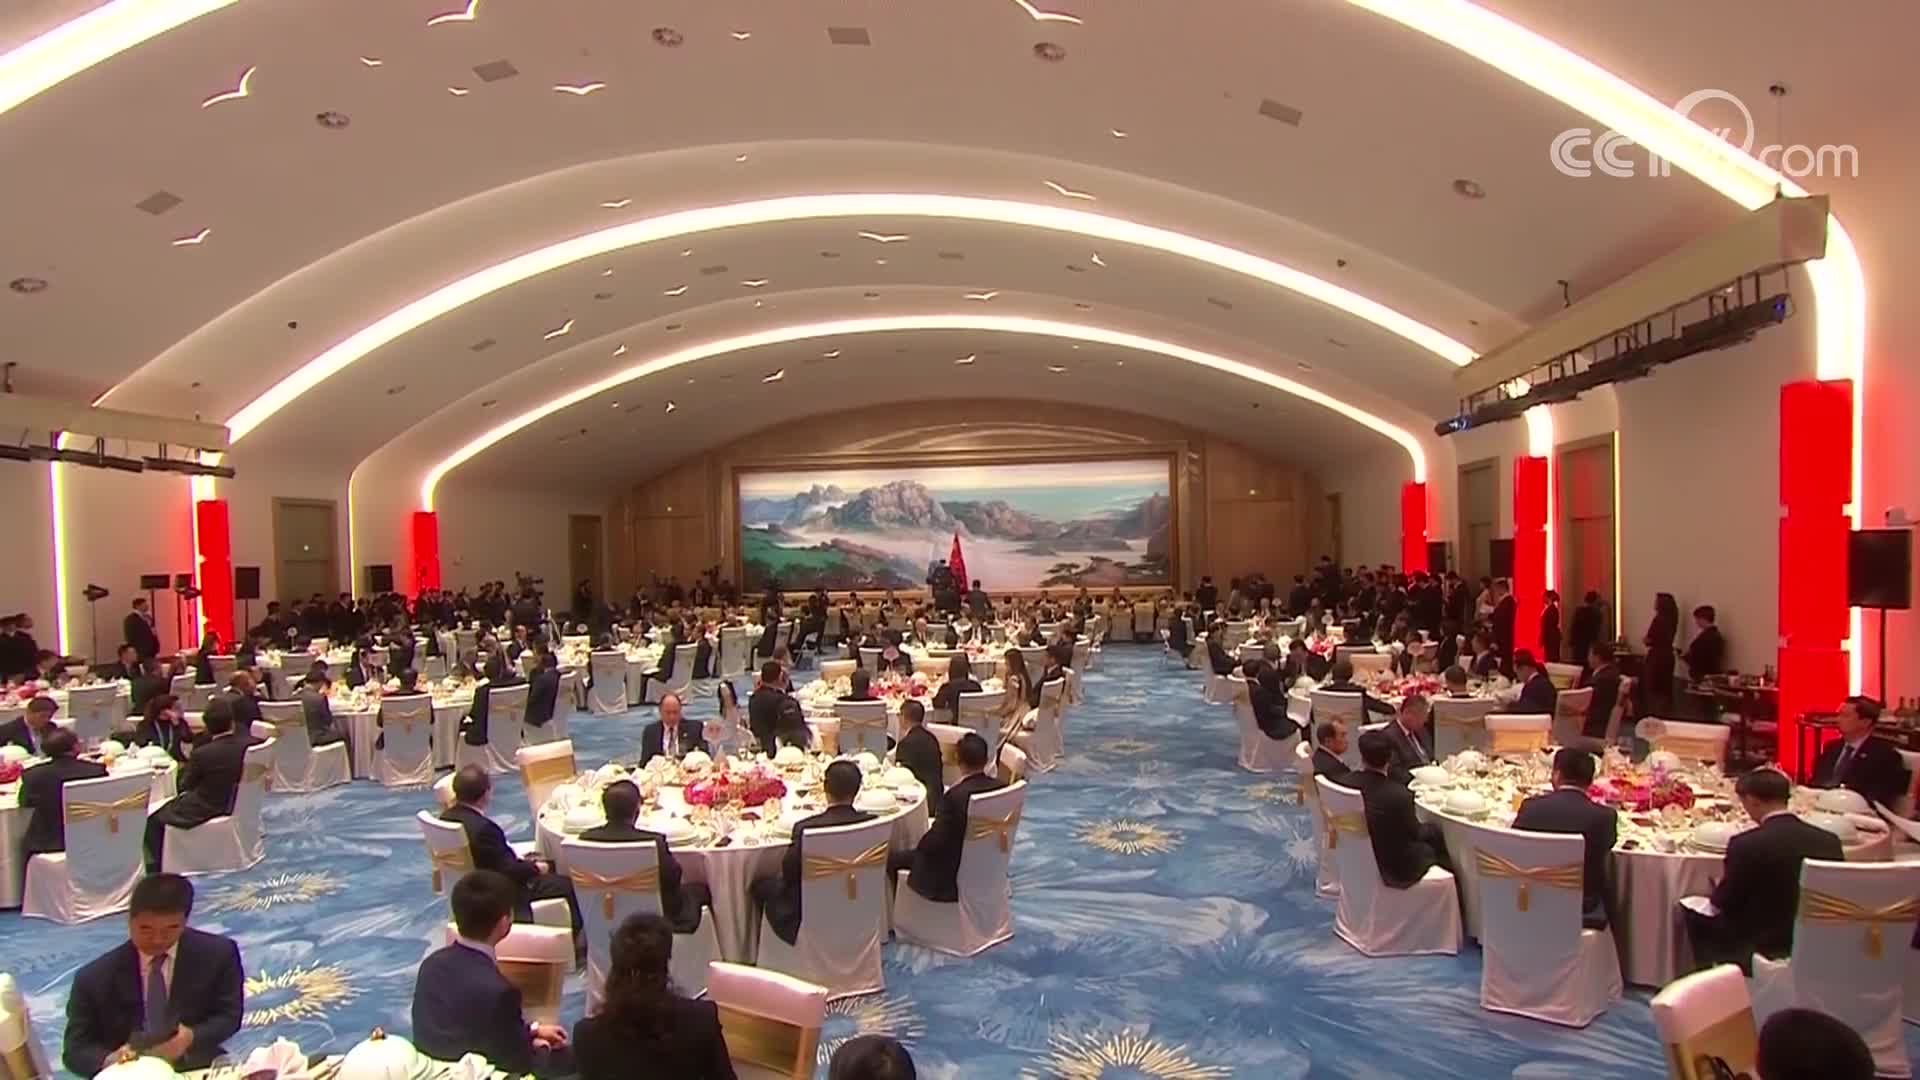 [视频]习近平出席上海合作组织青岛峰会欢迎宴并致祝酒辞